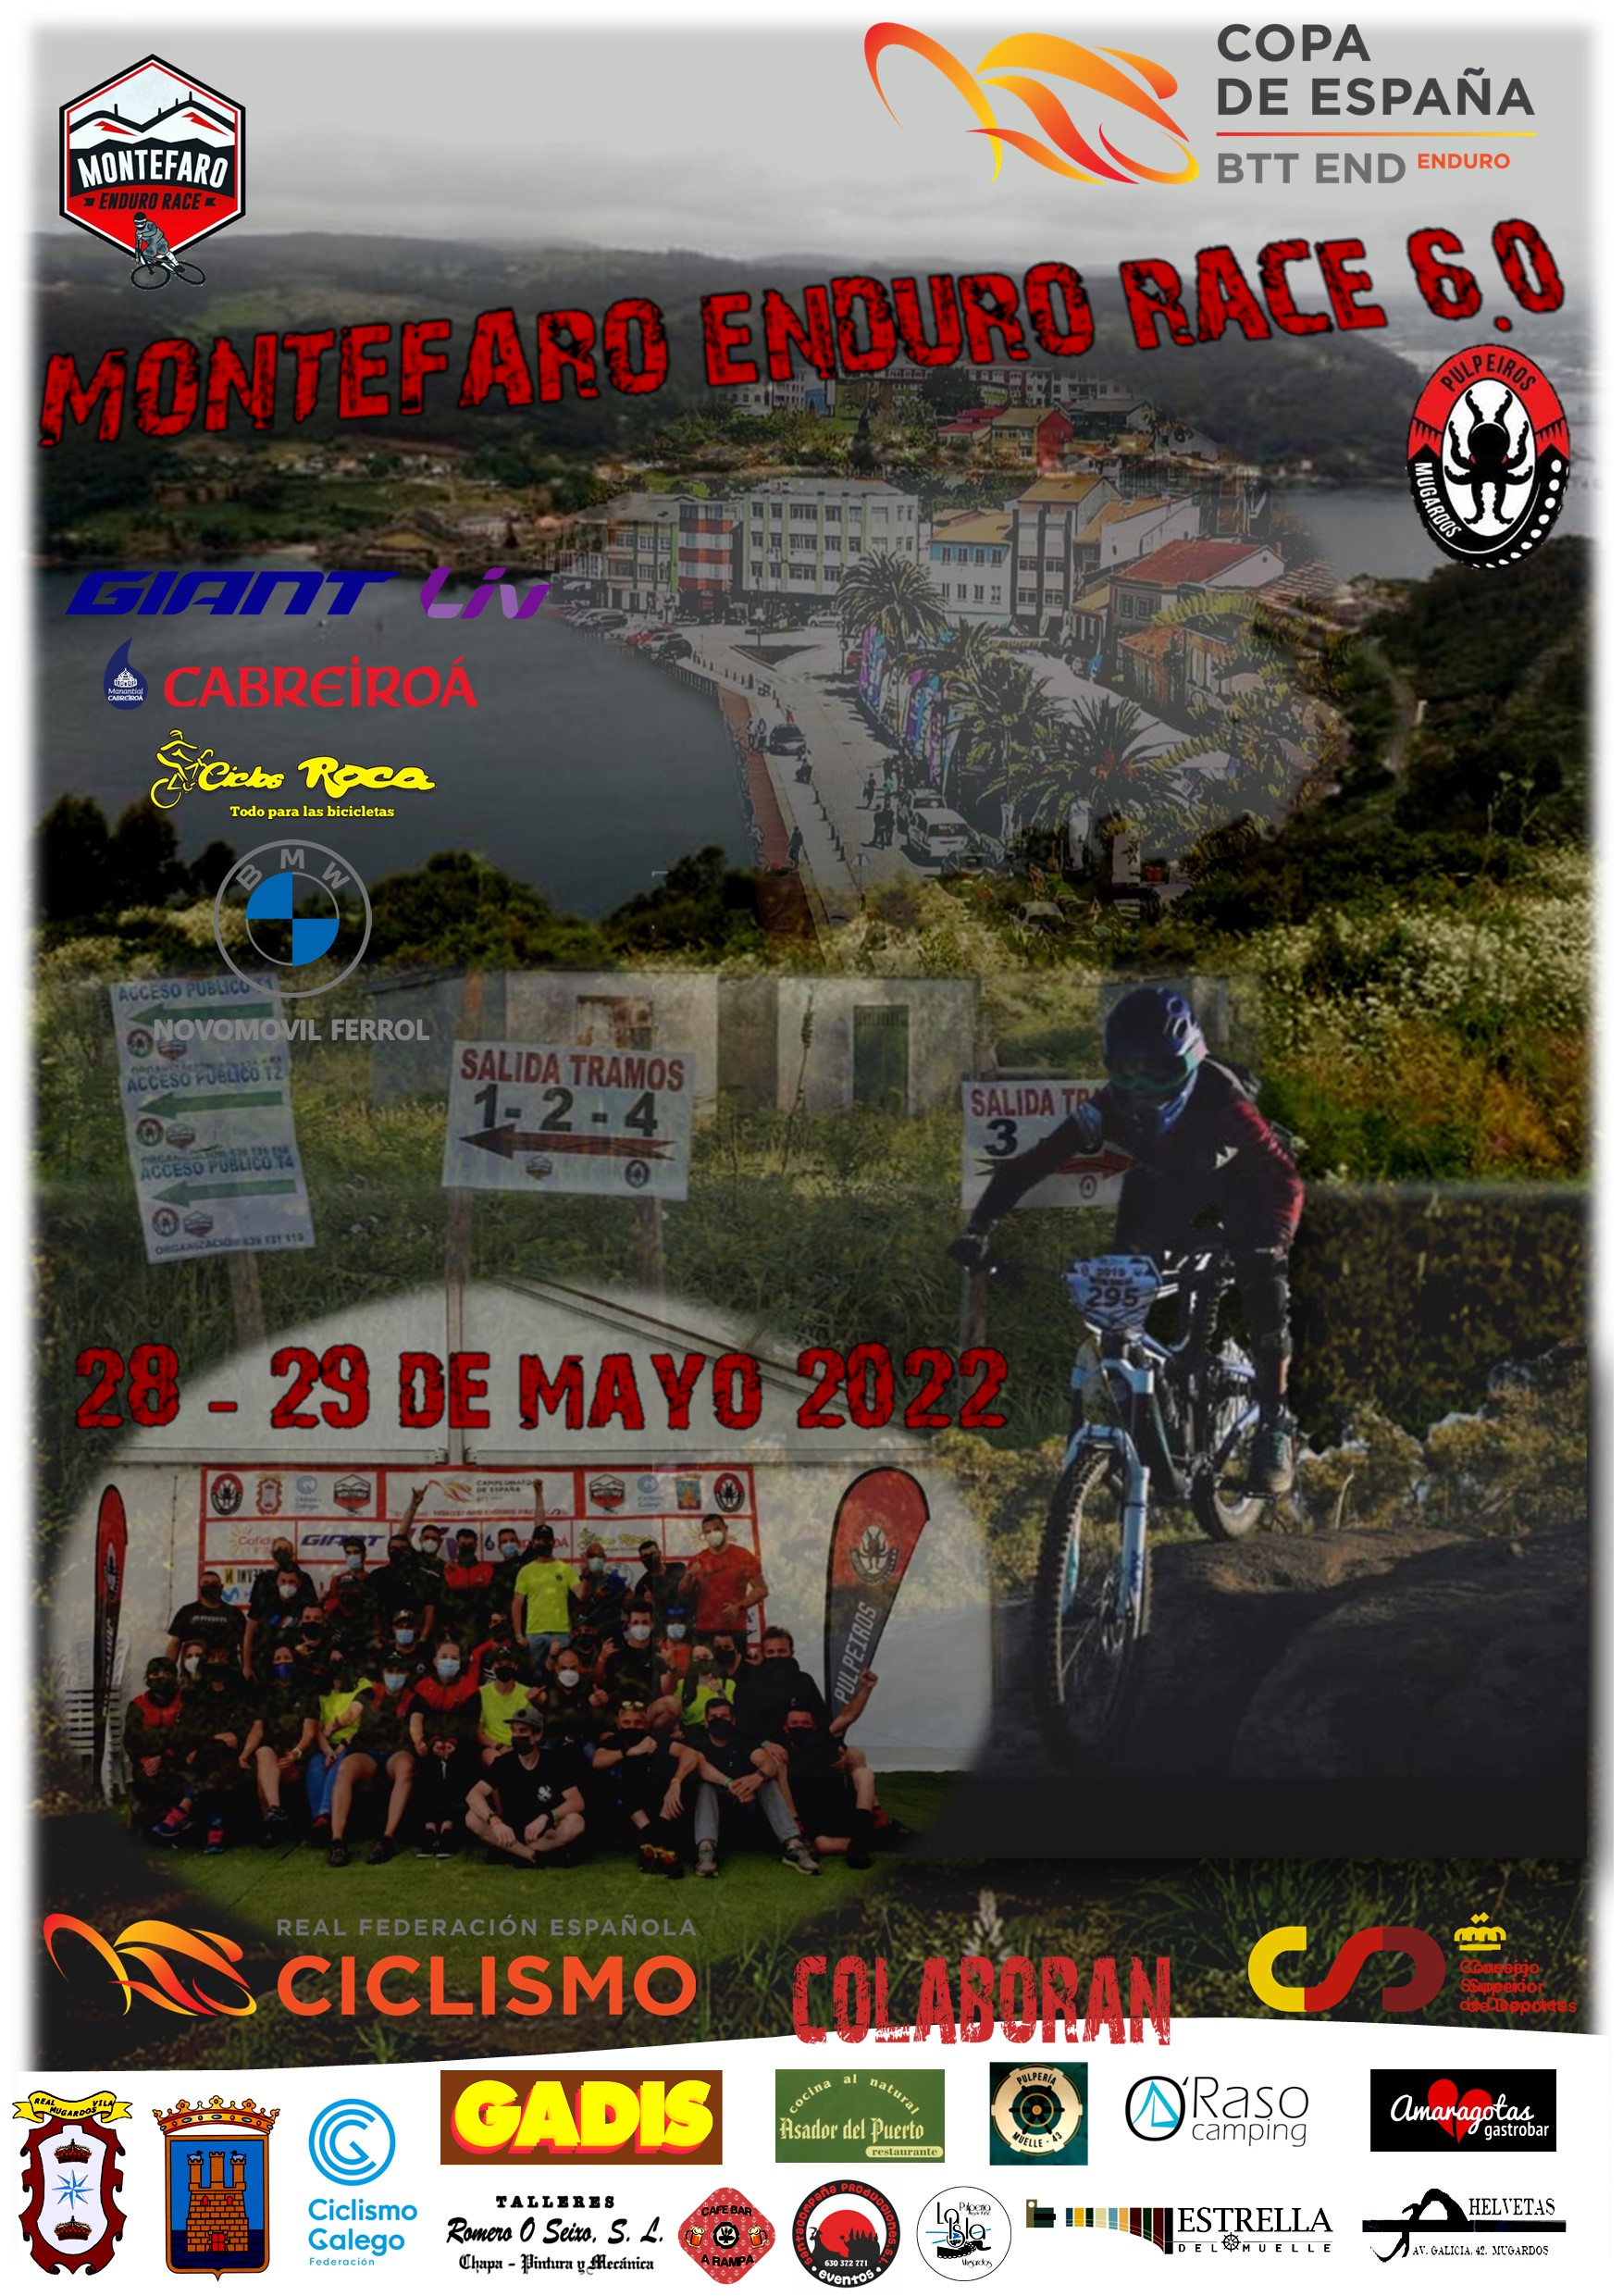 Montefaro Enduro Race